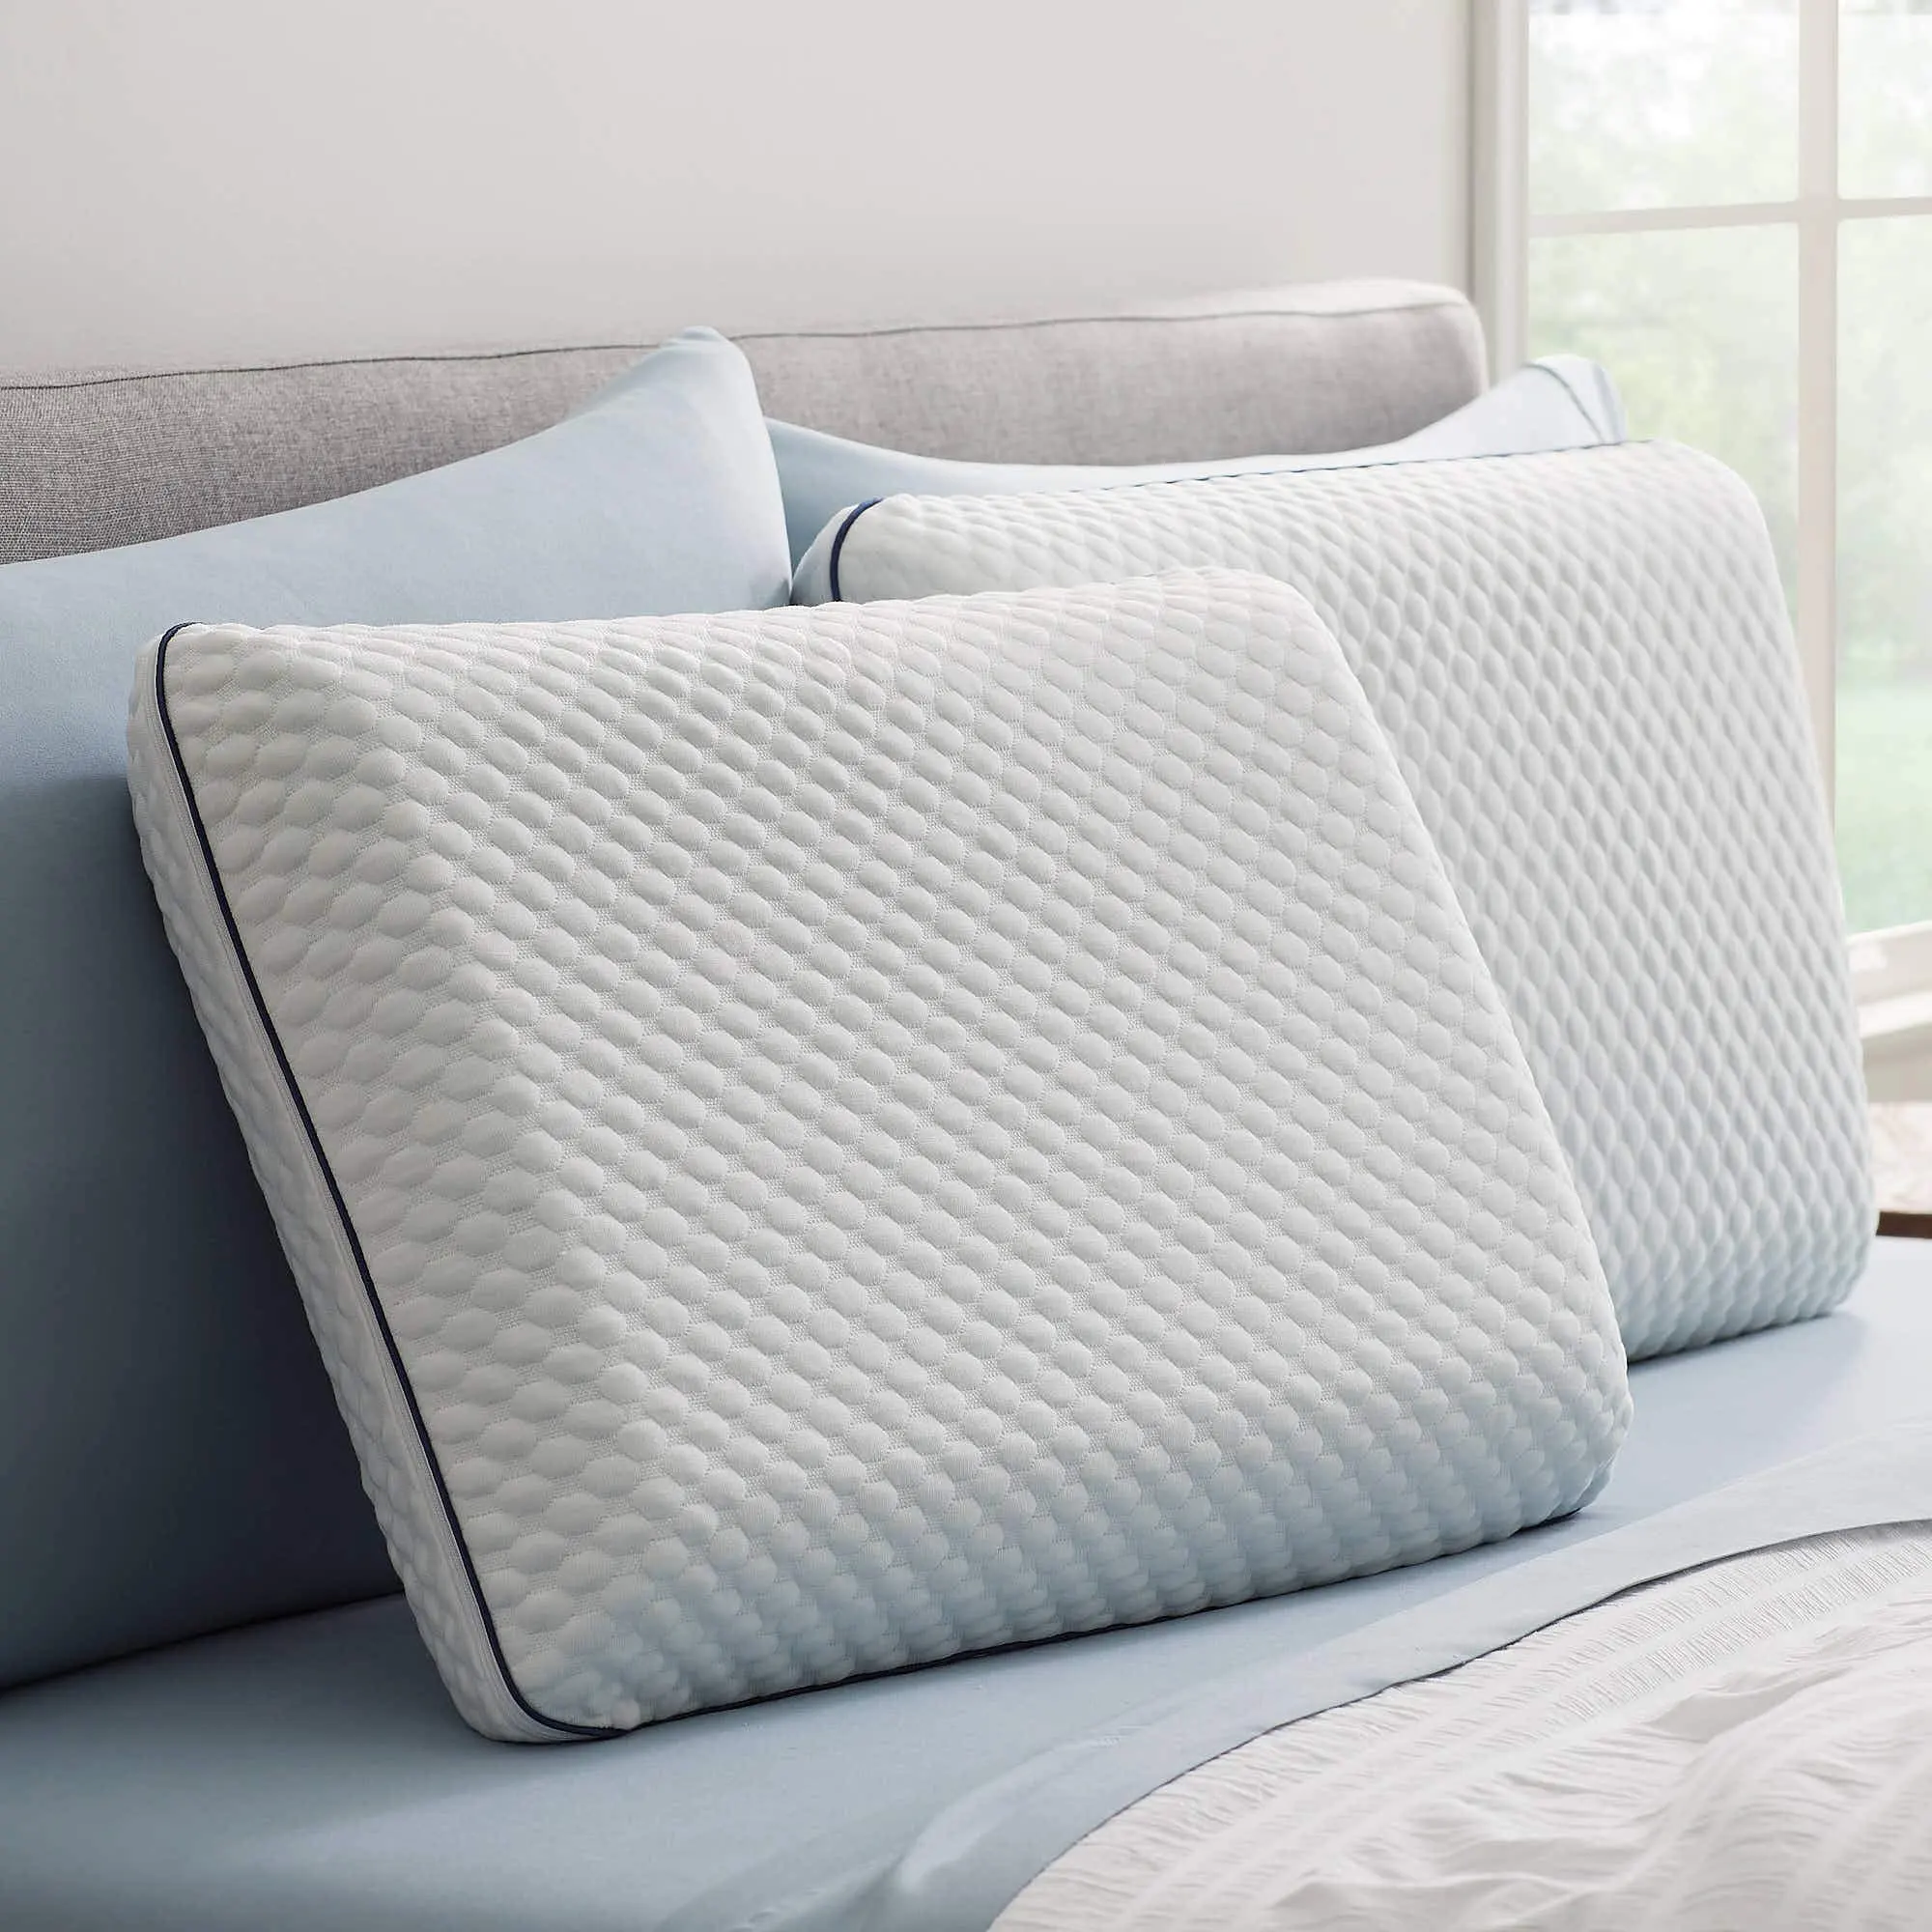 Prezzo di fabbrica i più venduti cuscini da letto OEM cuscino ergonomico ortopedico cervicale coccige Gel di raffreddamento memory foam